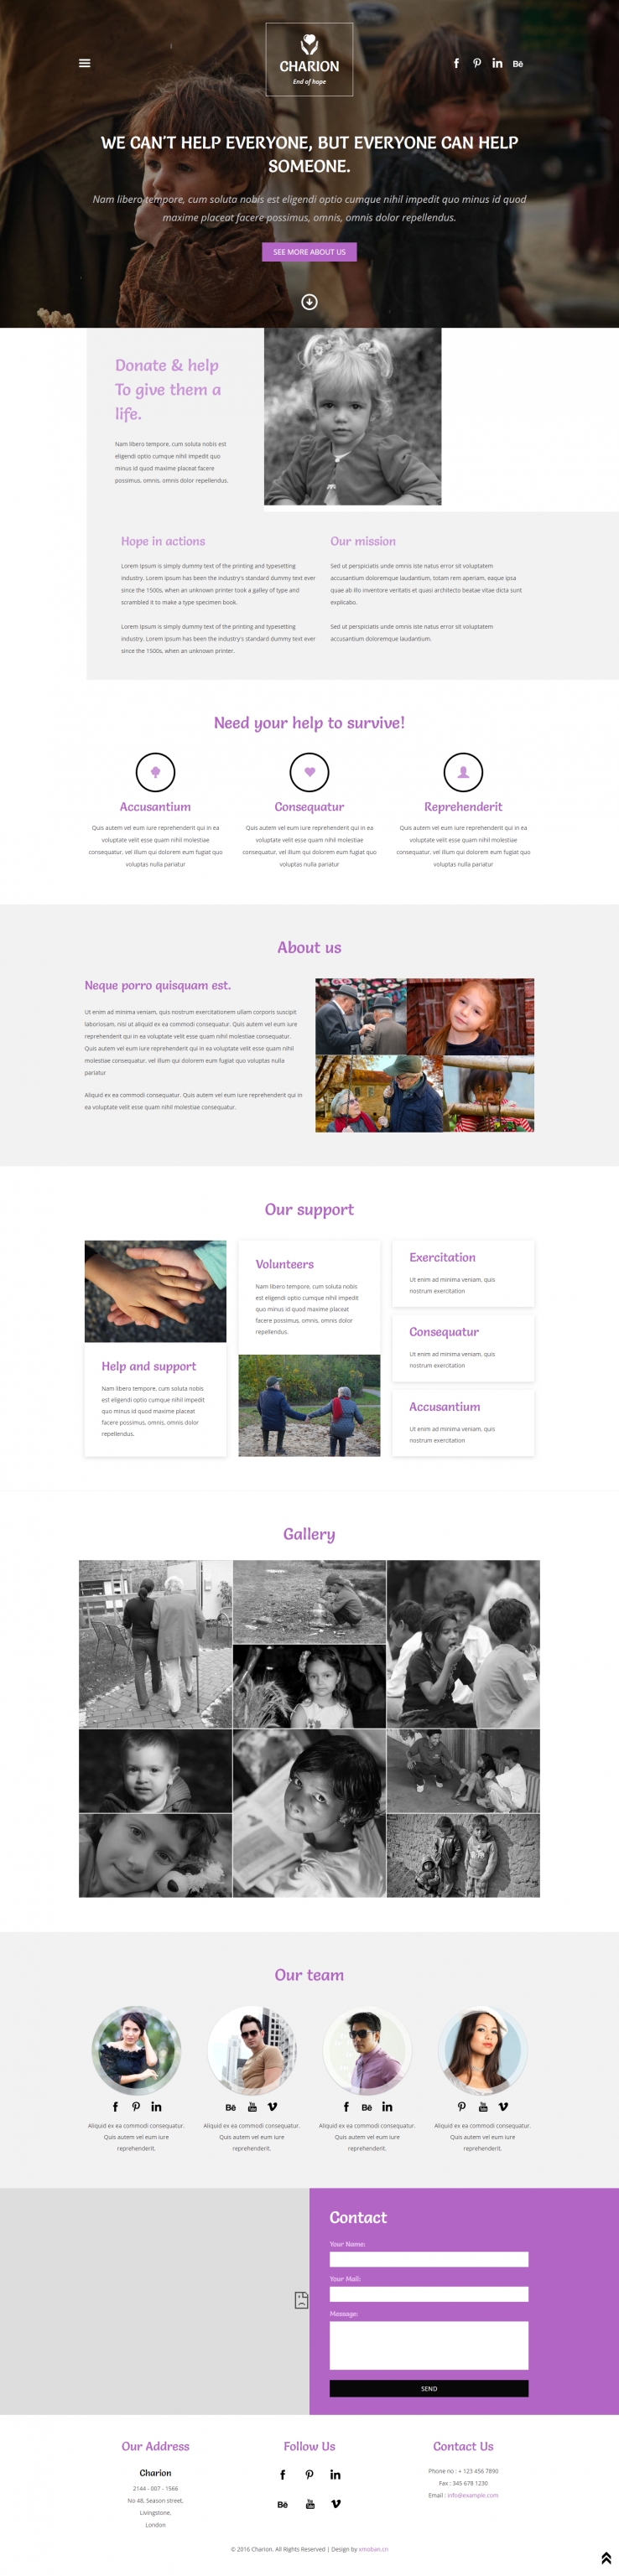 紫色欧美风格的社区公益服务整站网站源码下载